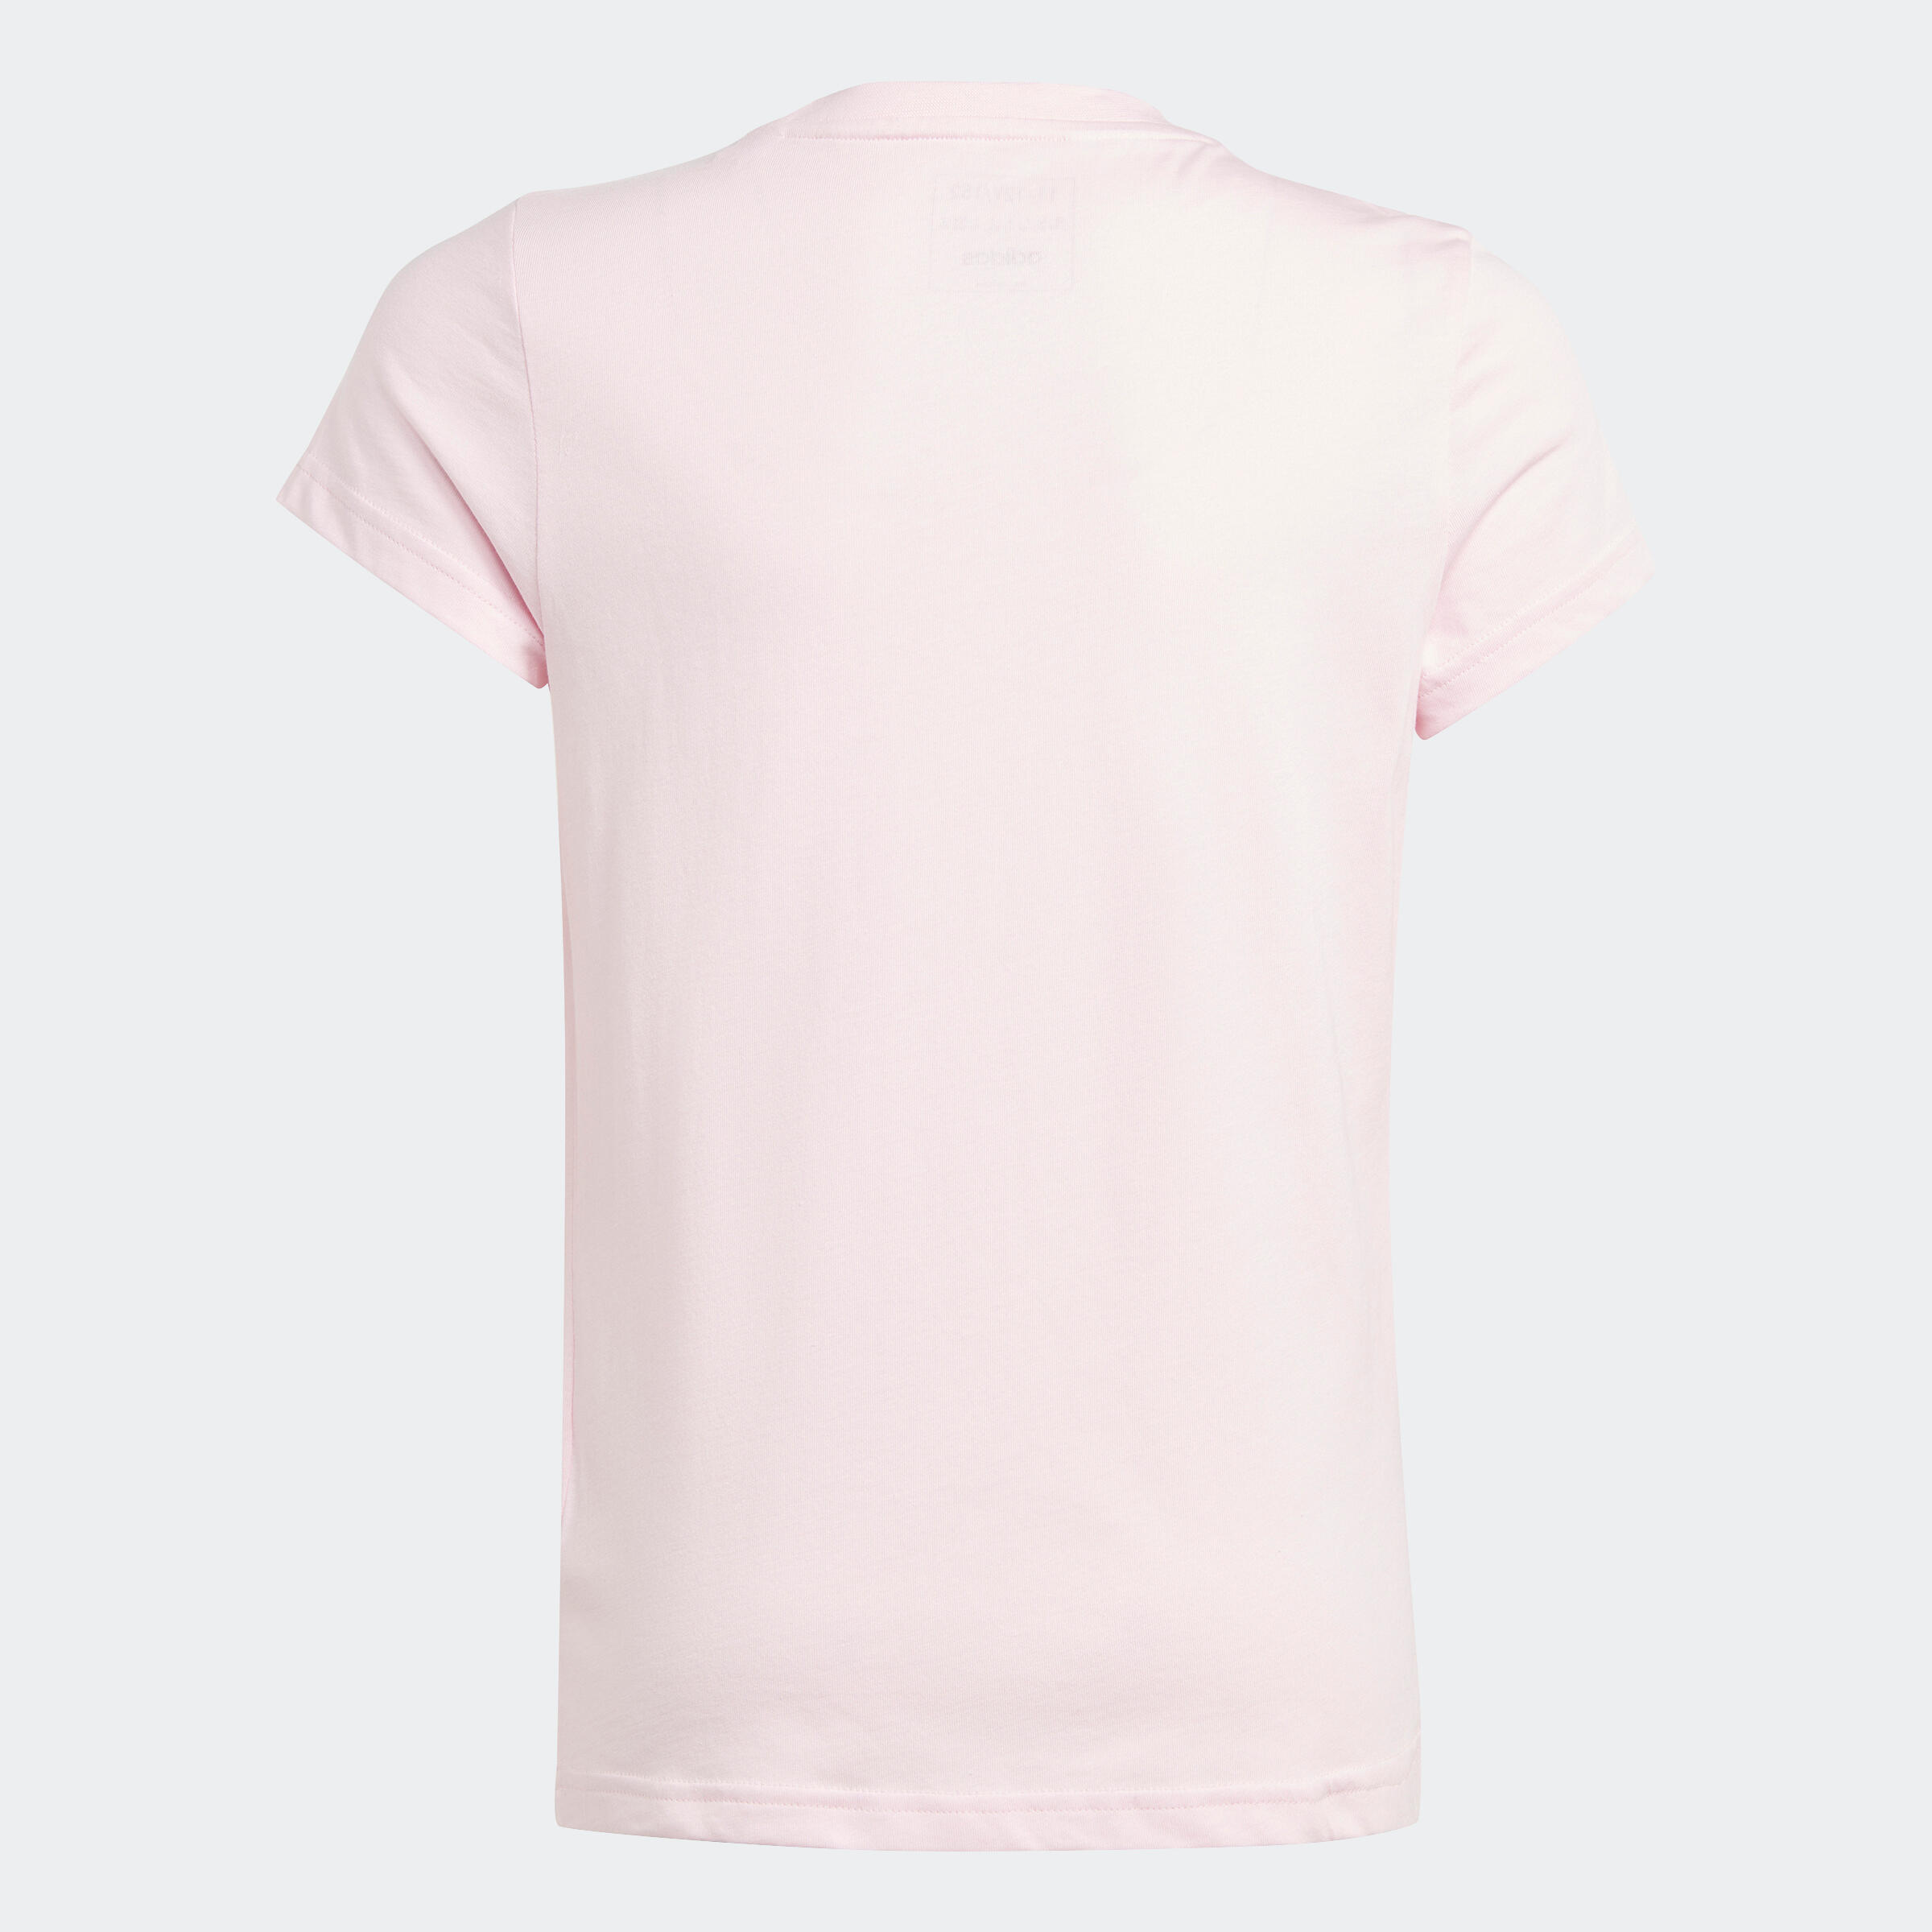 Girls' T-Shirt - Pink/White Logo 2/5